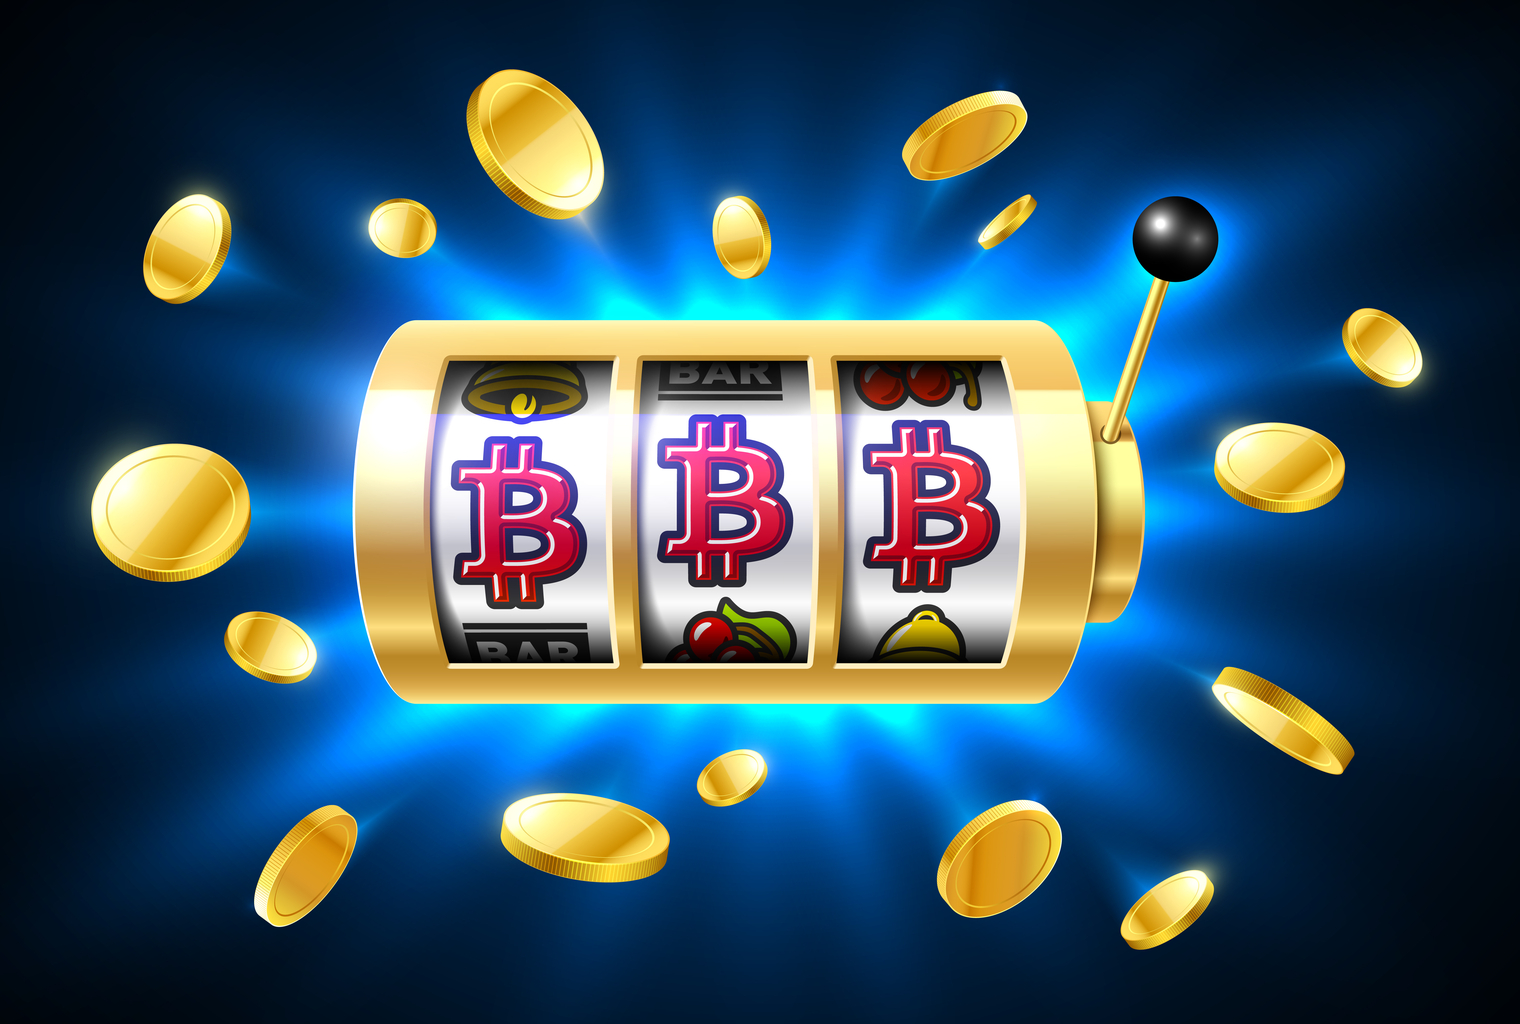 Code bonus free spin casino